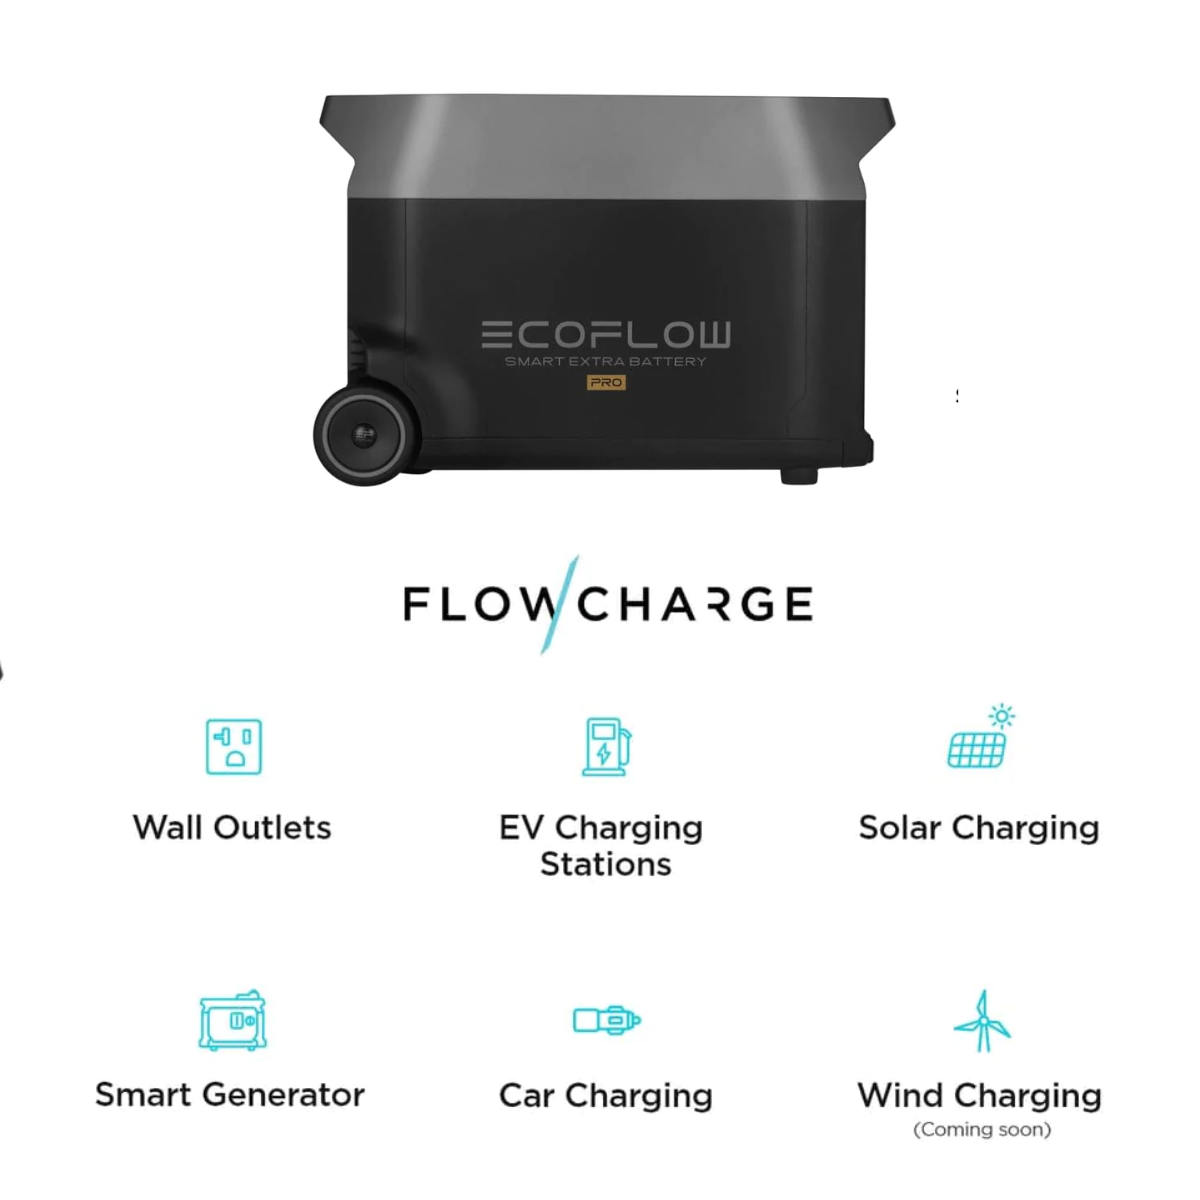 EcoFlow DELTA Pro 智能备用电池